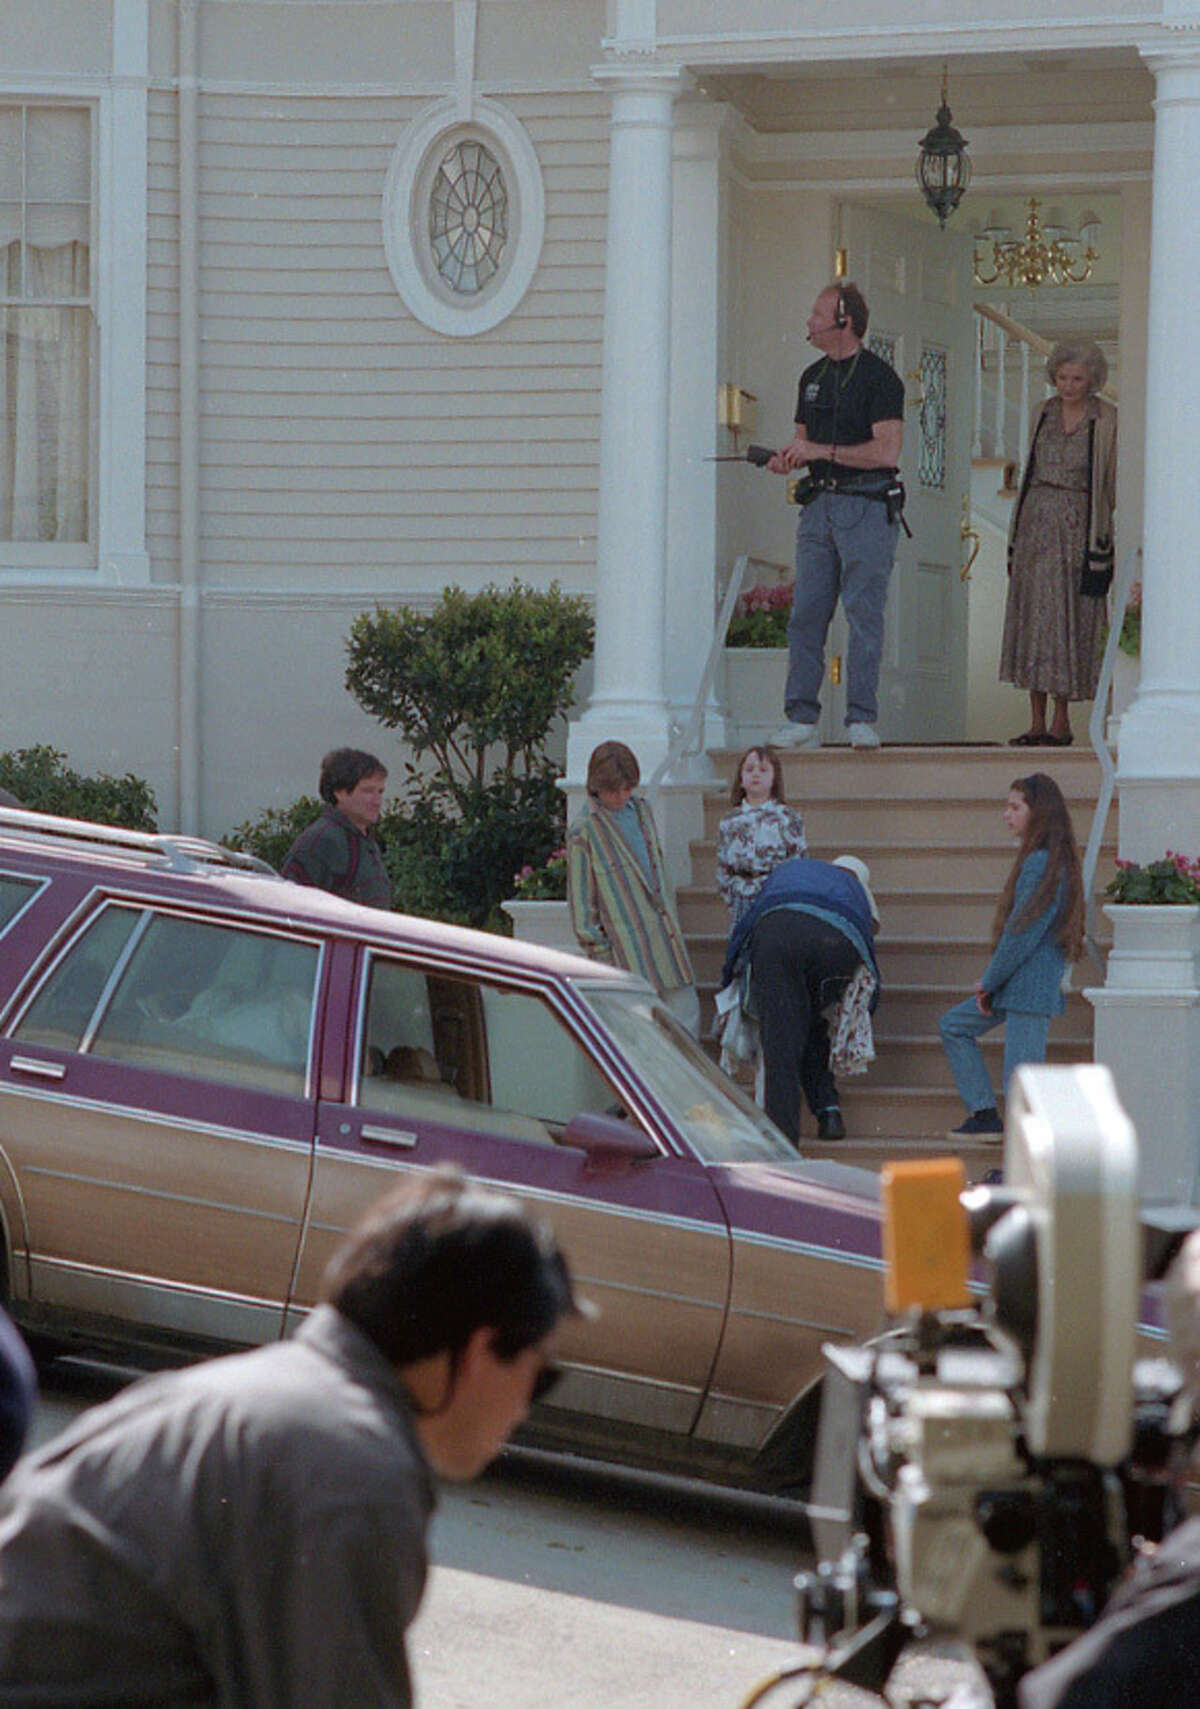 Los equipos de filmación filman una escena para la película "Mrs. Doubtfire" en la década de 1990.